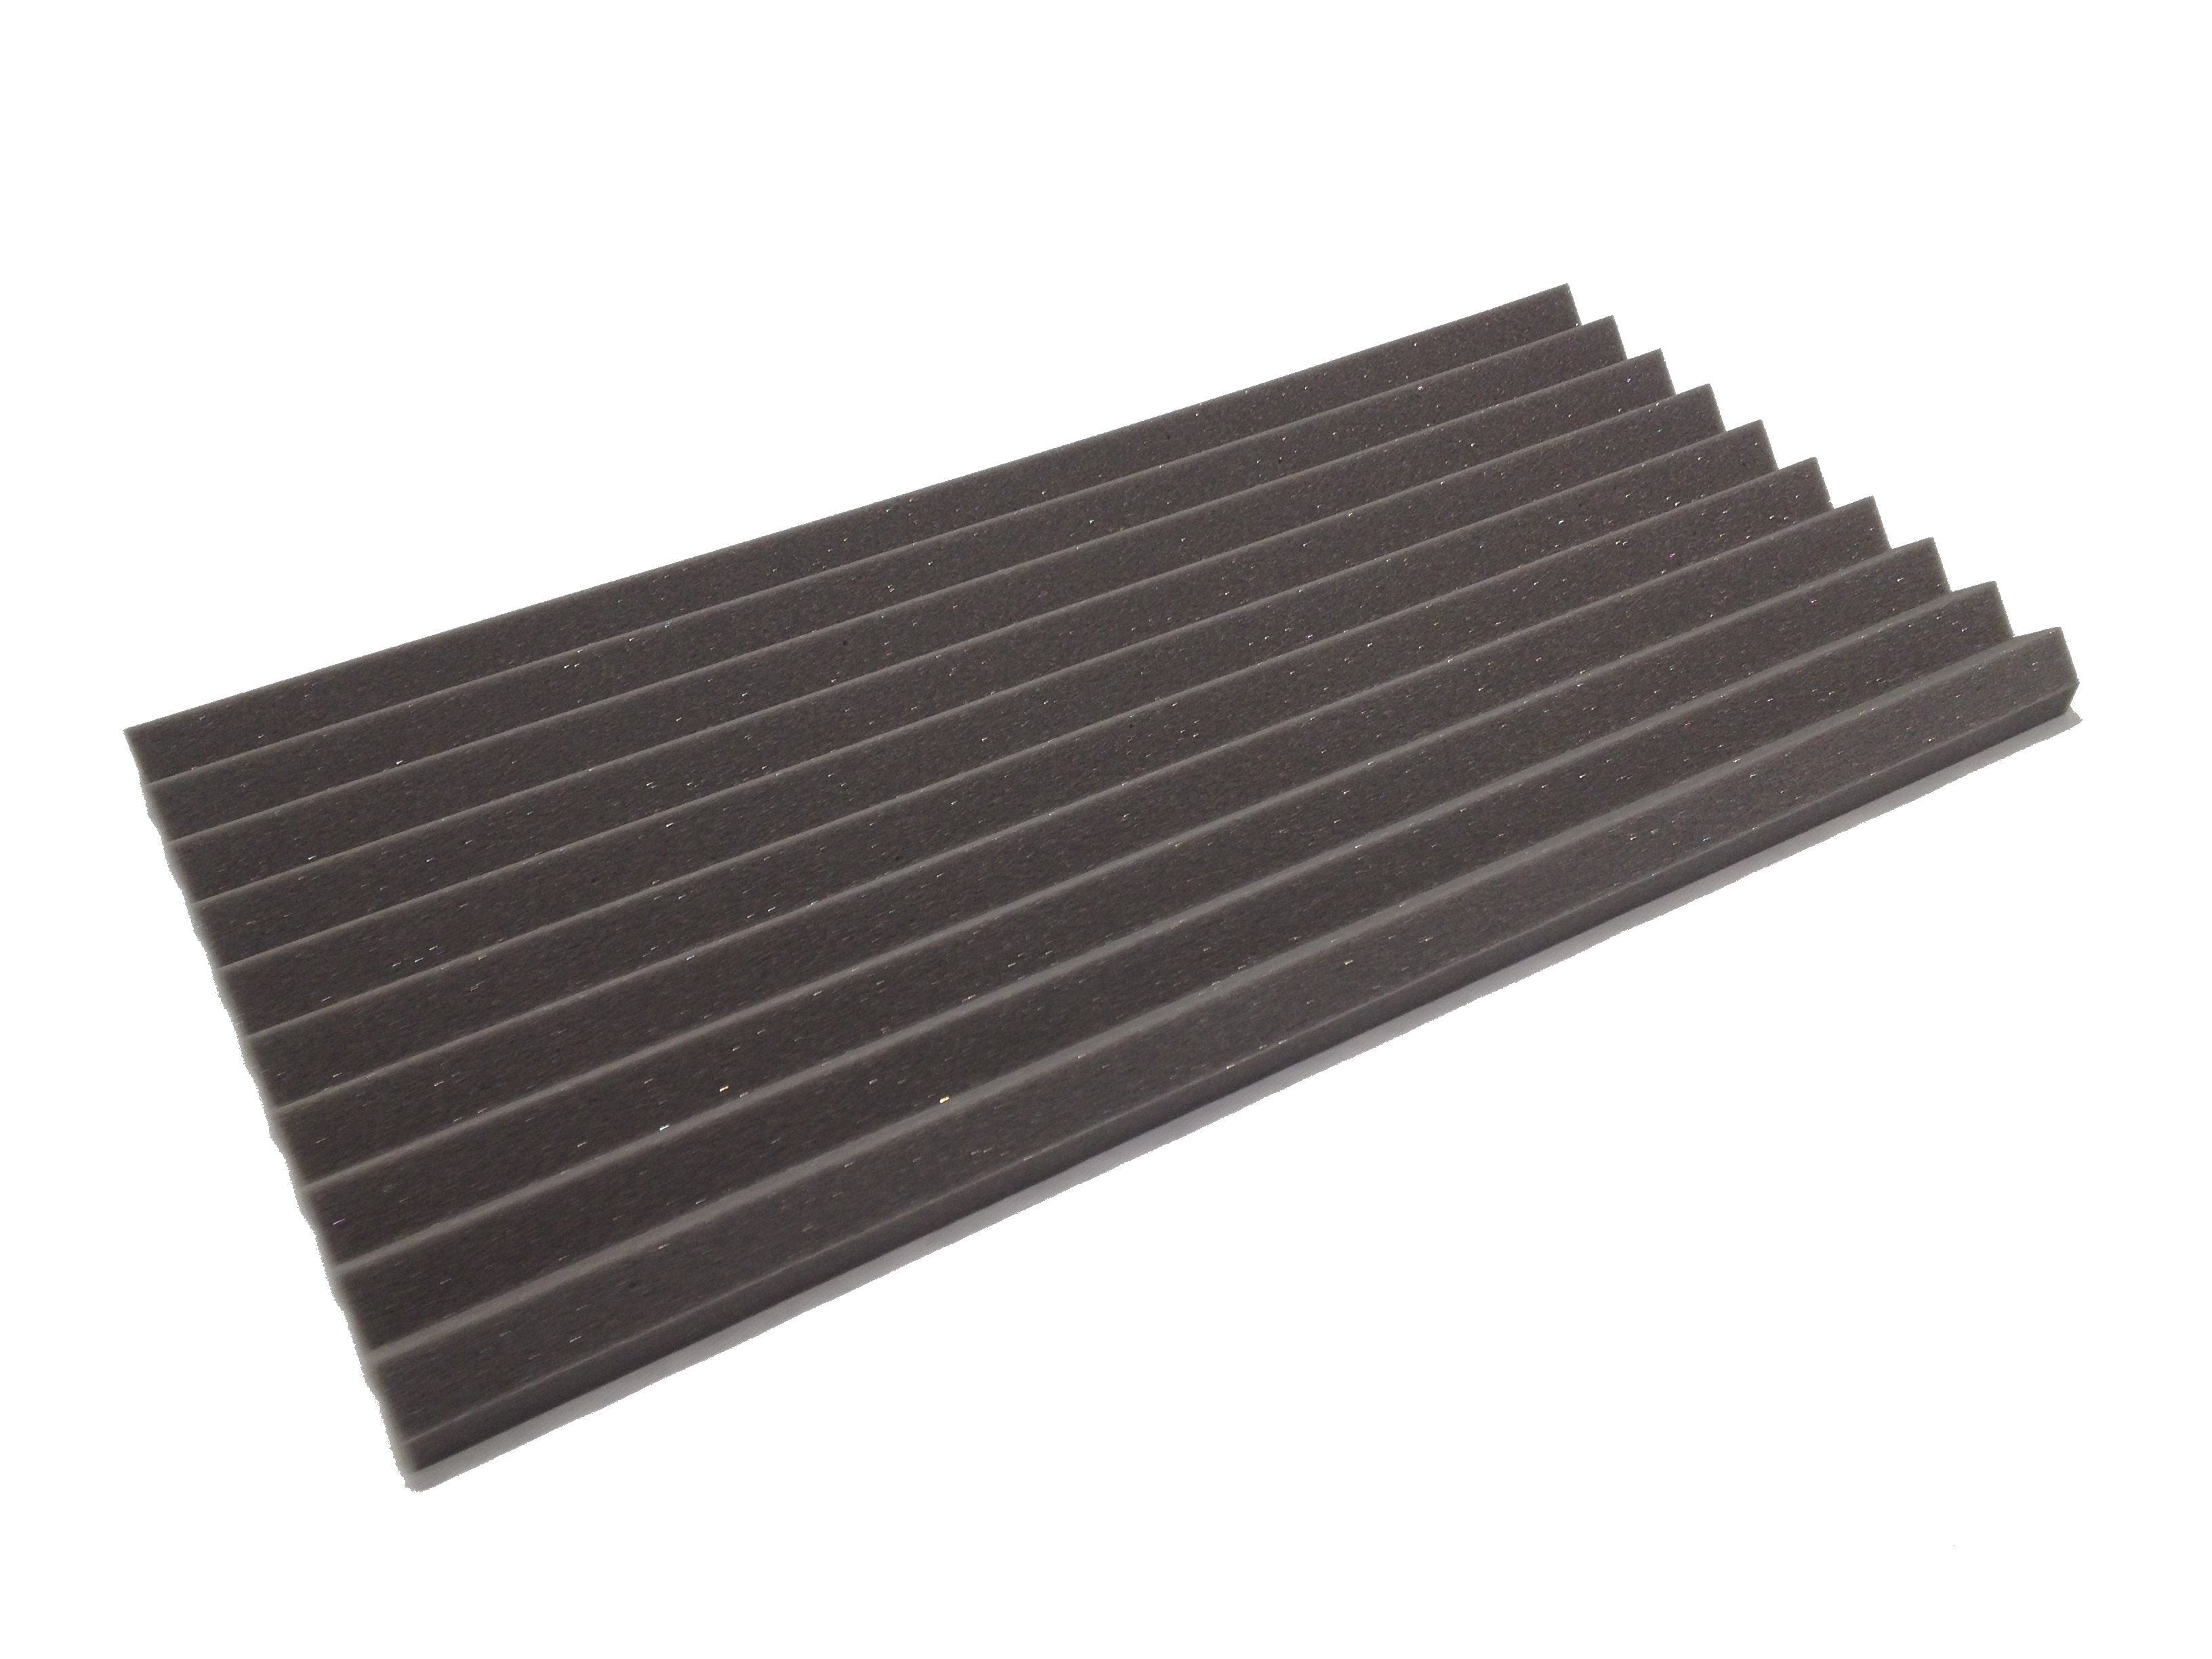 Wedge 30"x15" Acoustic Studio Foam Tile Pack - Advanced Acoustics